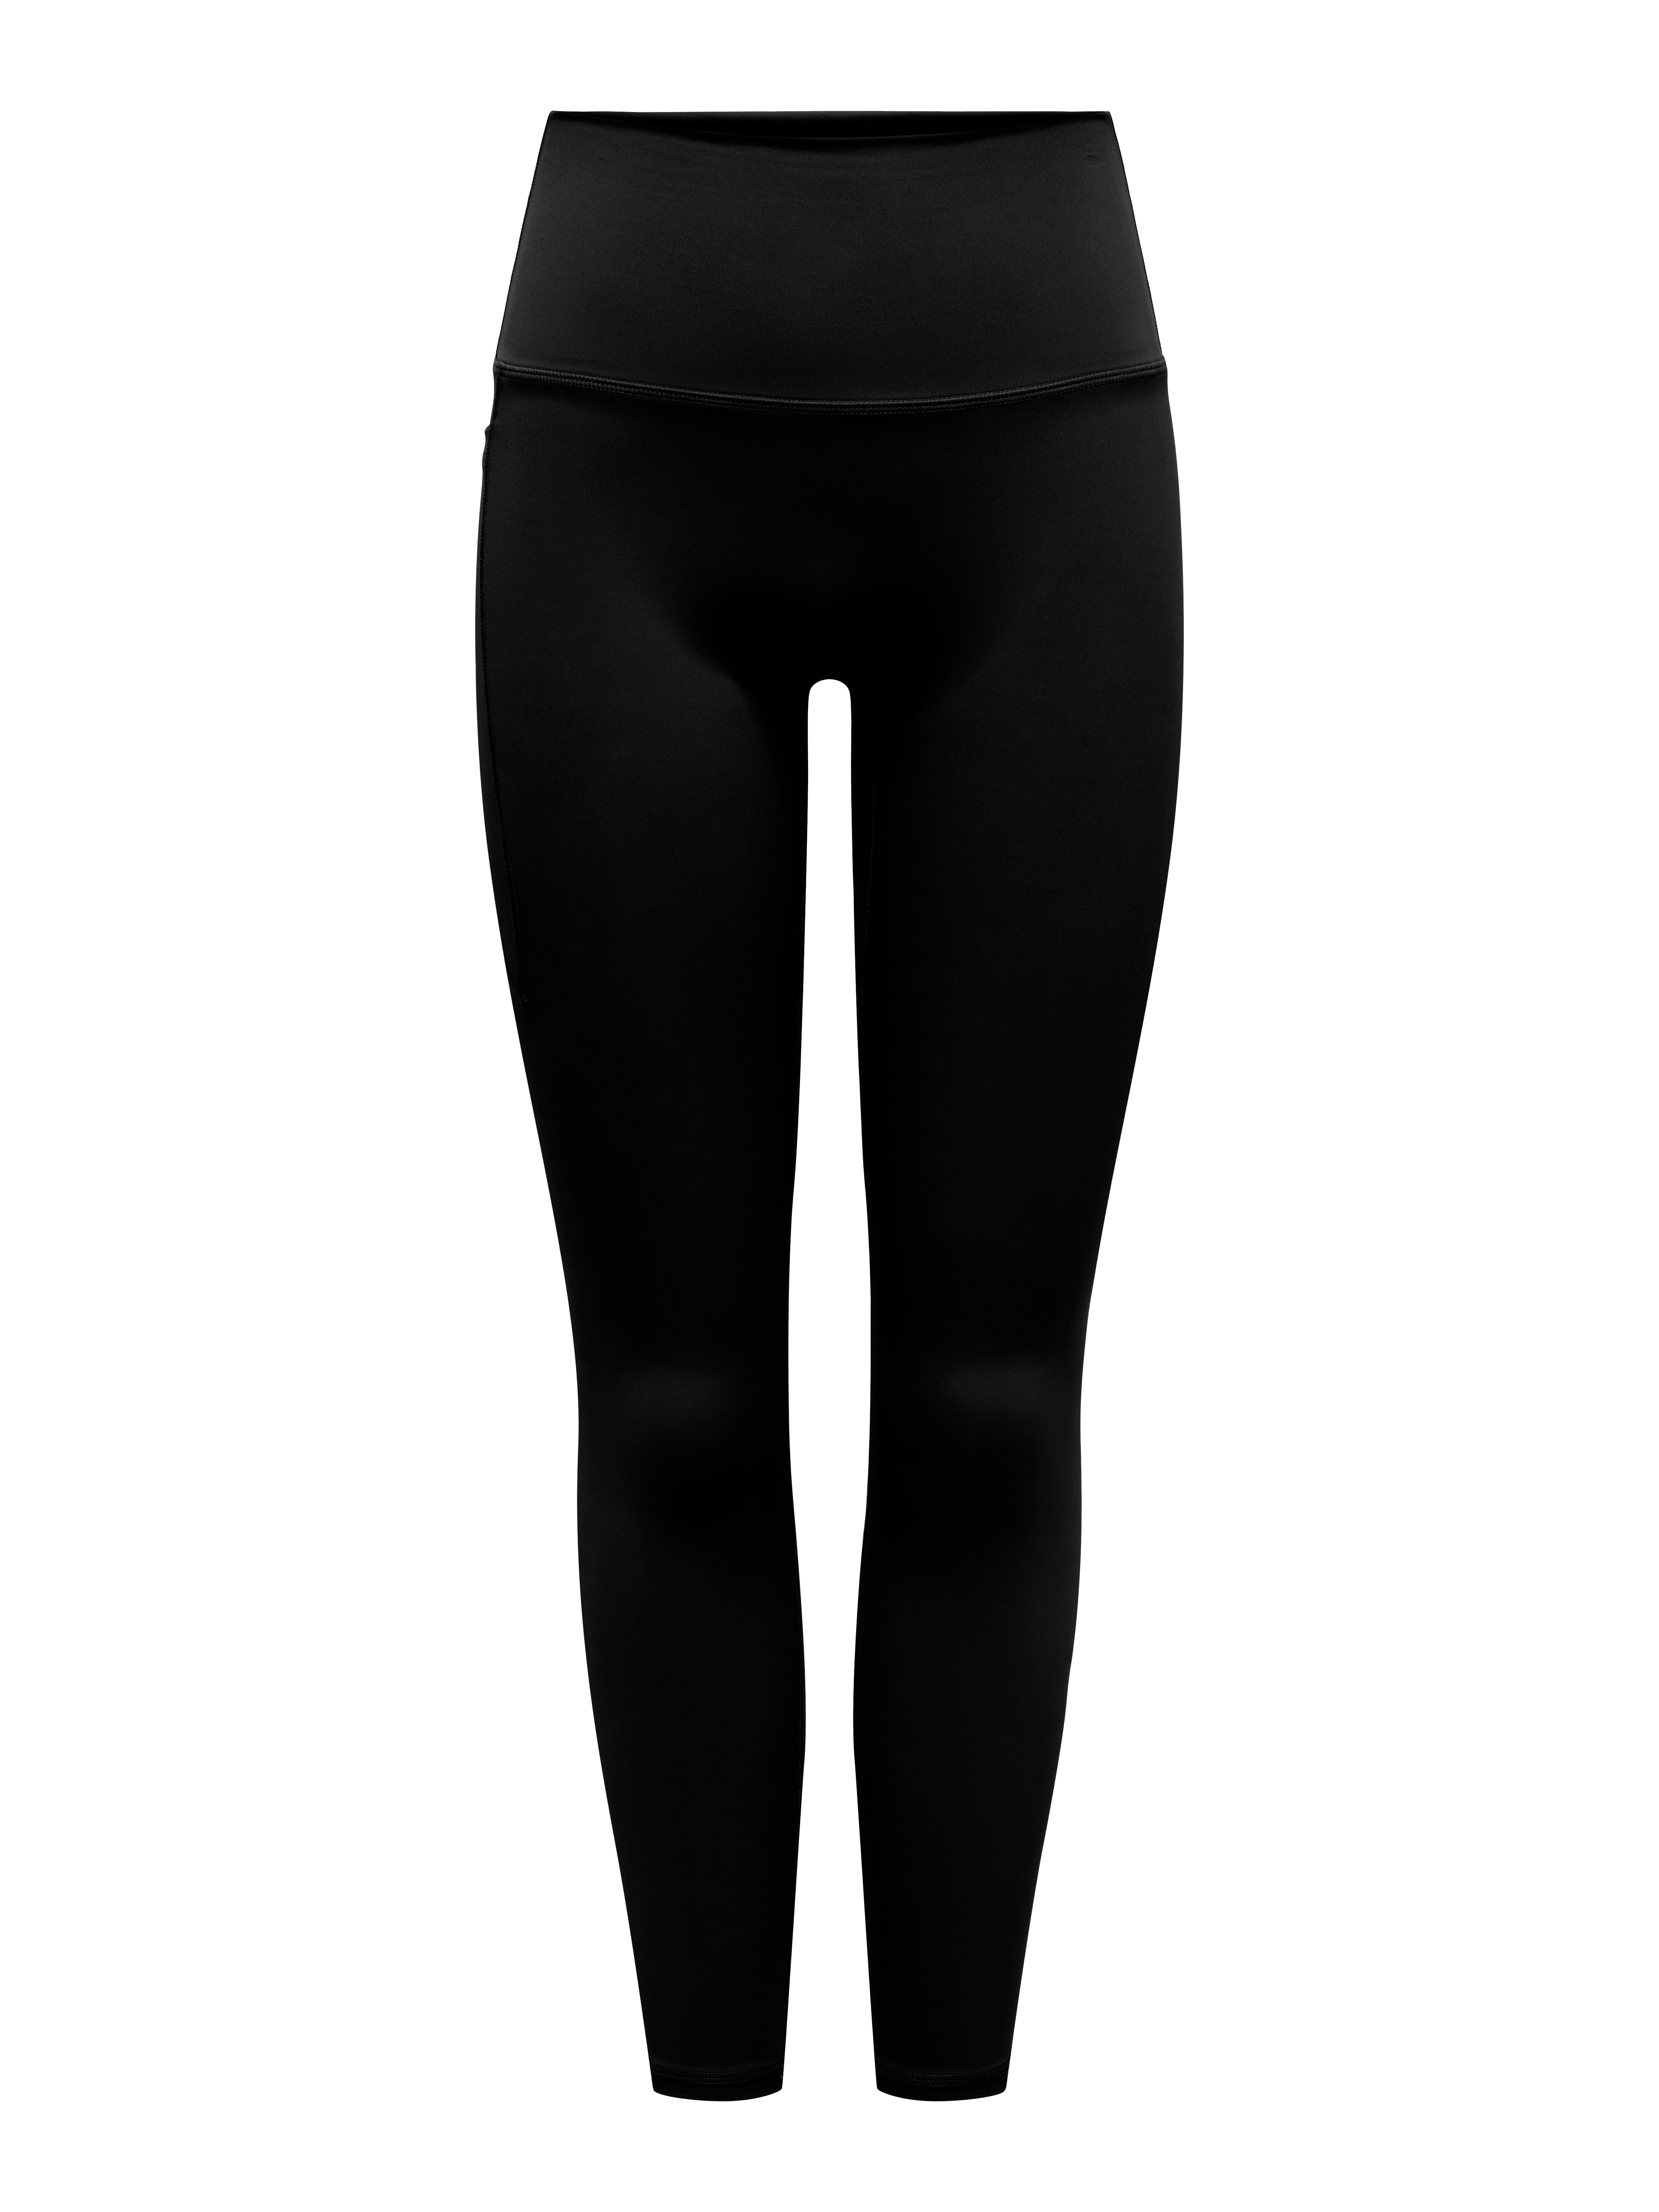 Nike Women's Tight Fit Printed Logo High Rise Full Length Leggings-Black |  eBay